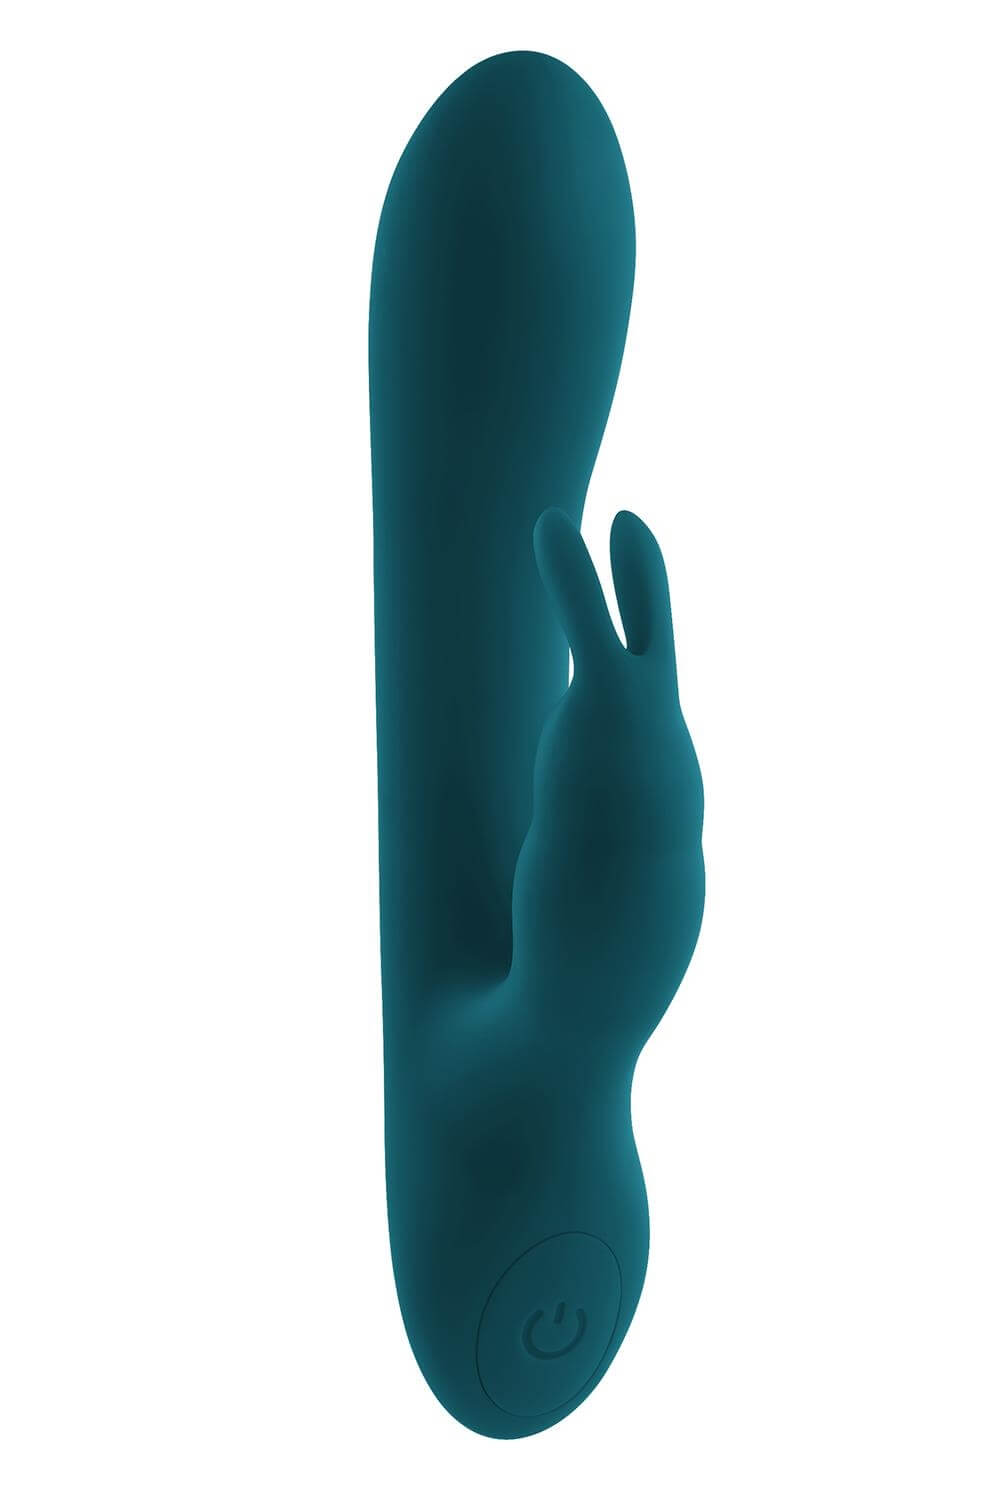 Playboy Rabbit - akkus, vízálló csiklókaros vibrátor (türkiz) kép